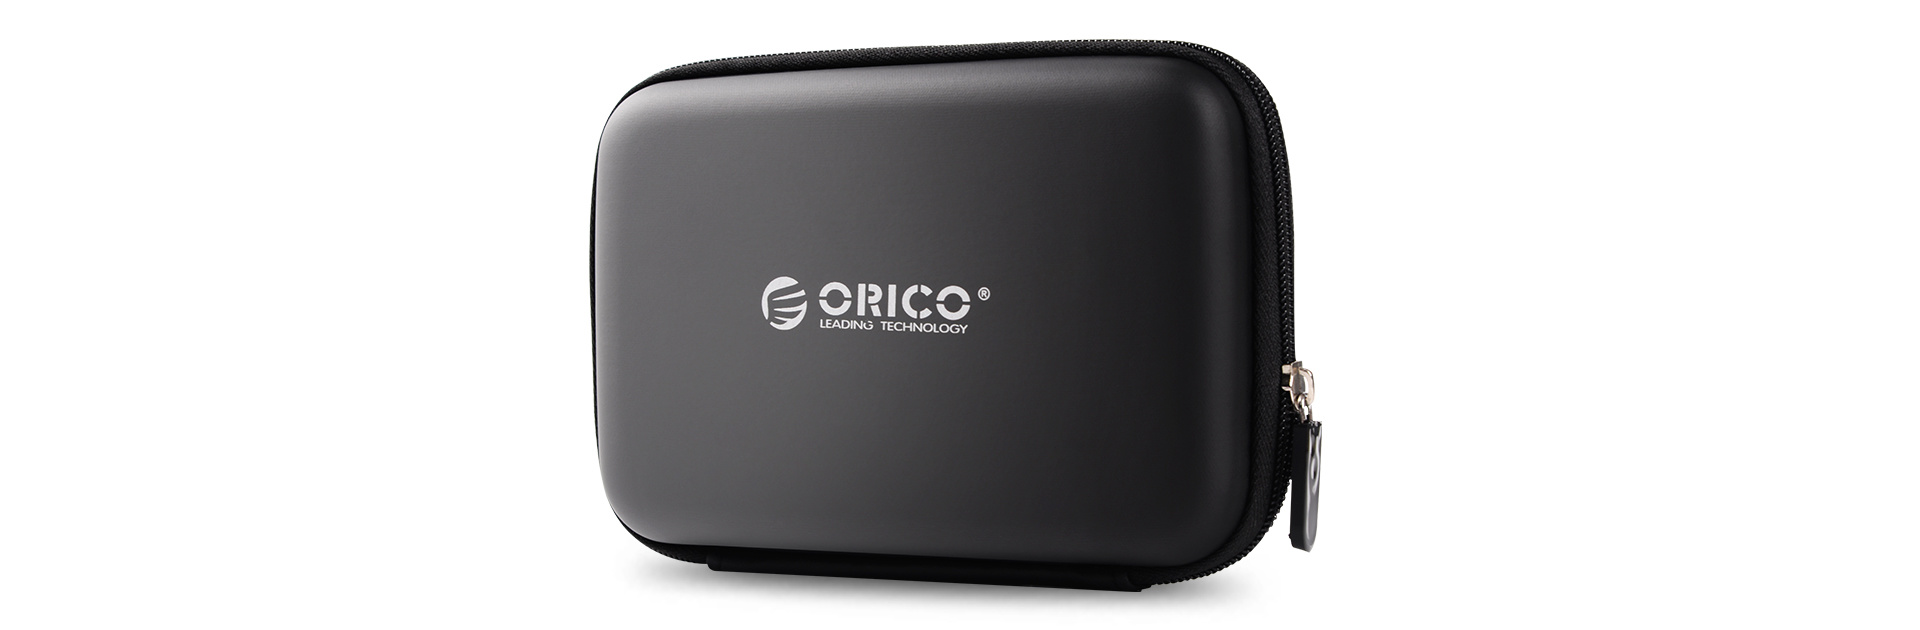 Etui de protection pour disque dur portable 2,5 pouces - noir - Orico